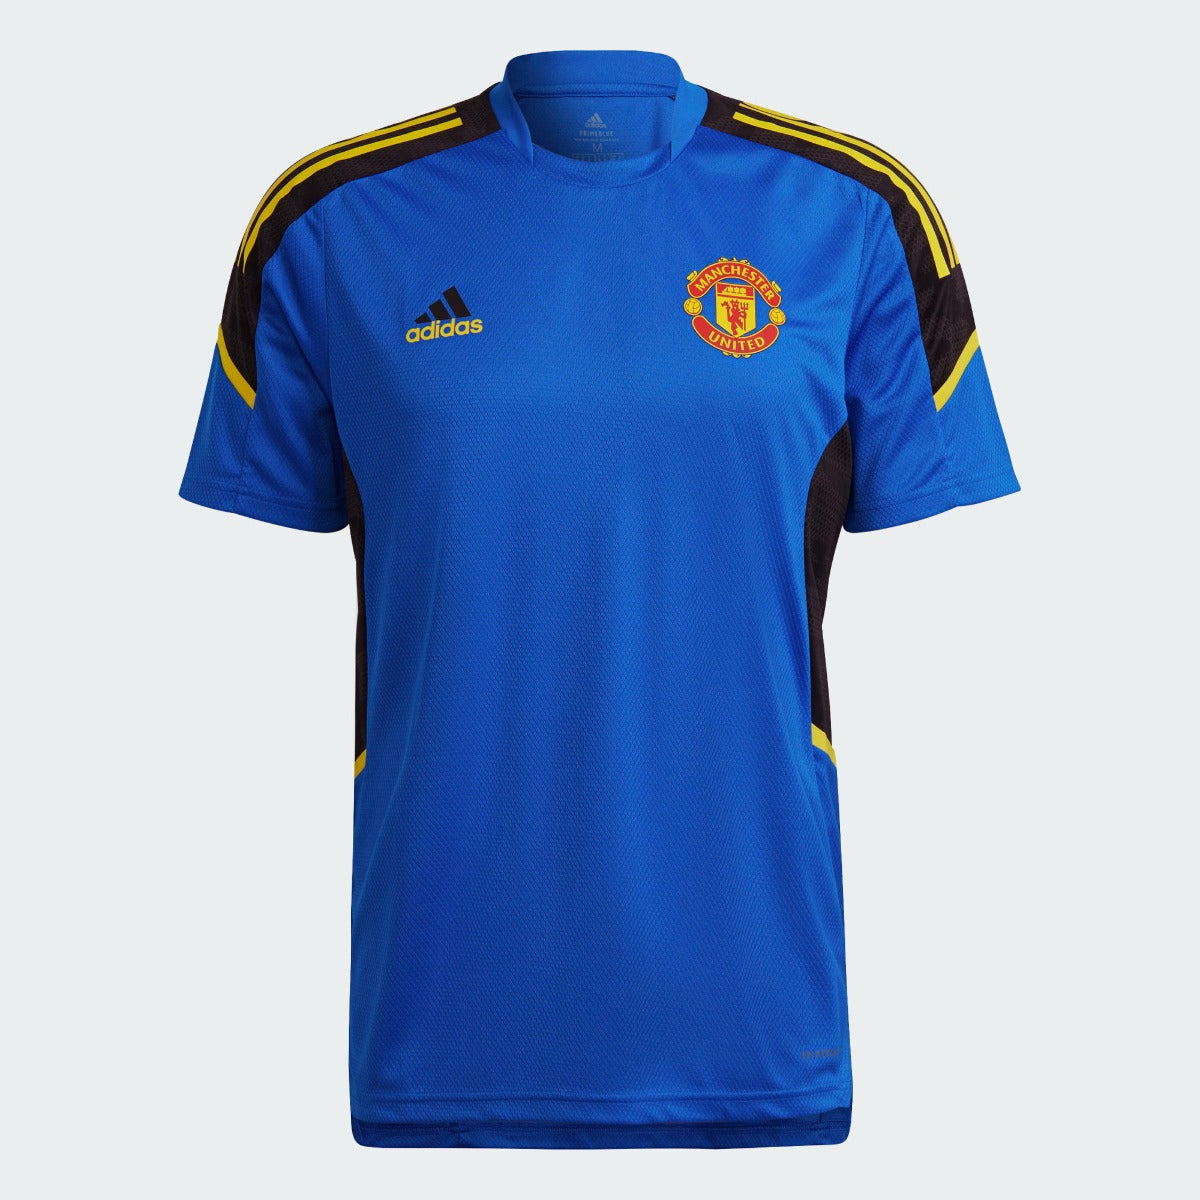 Adidas, Maglia da allenamento Adidas 2021-22 Manchester United Euro - Blu incandescente